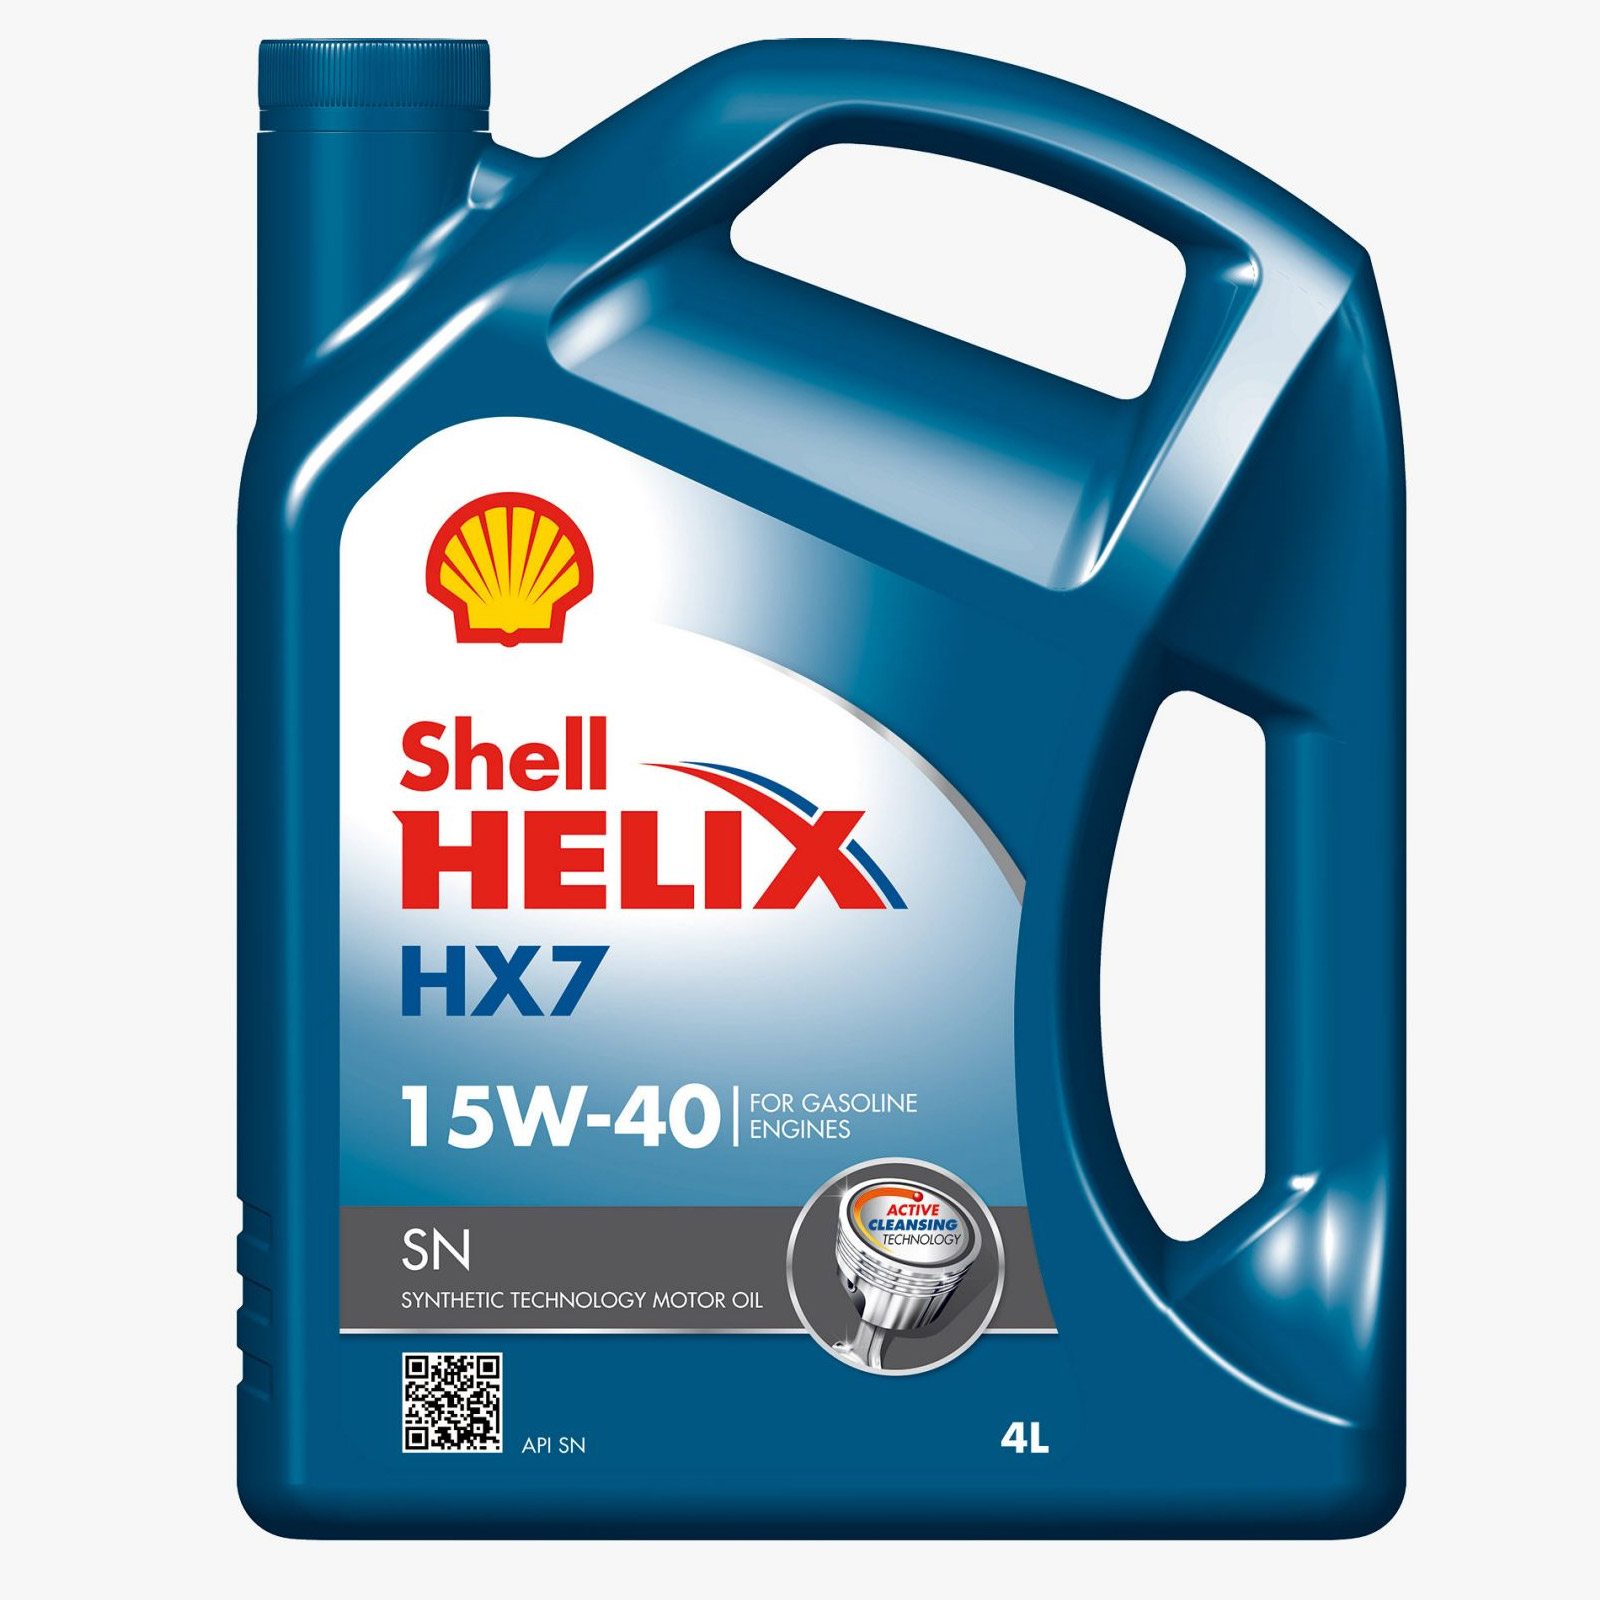 SHELL HELIX HX7 15W-40